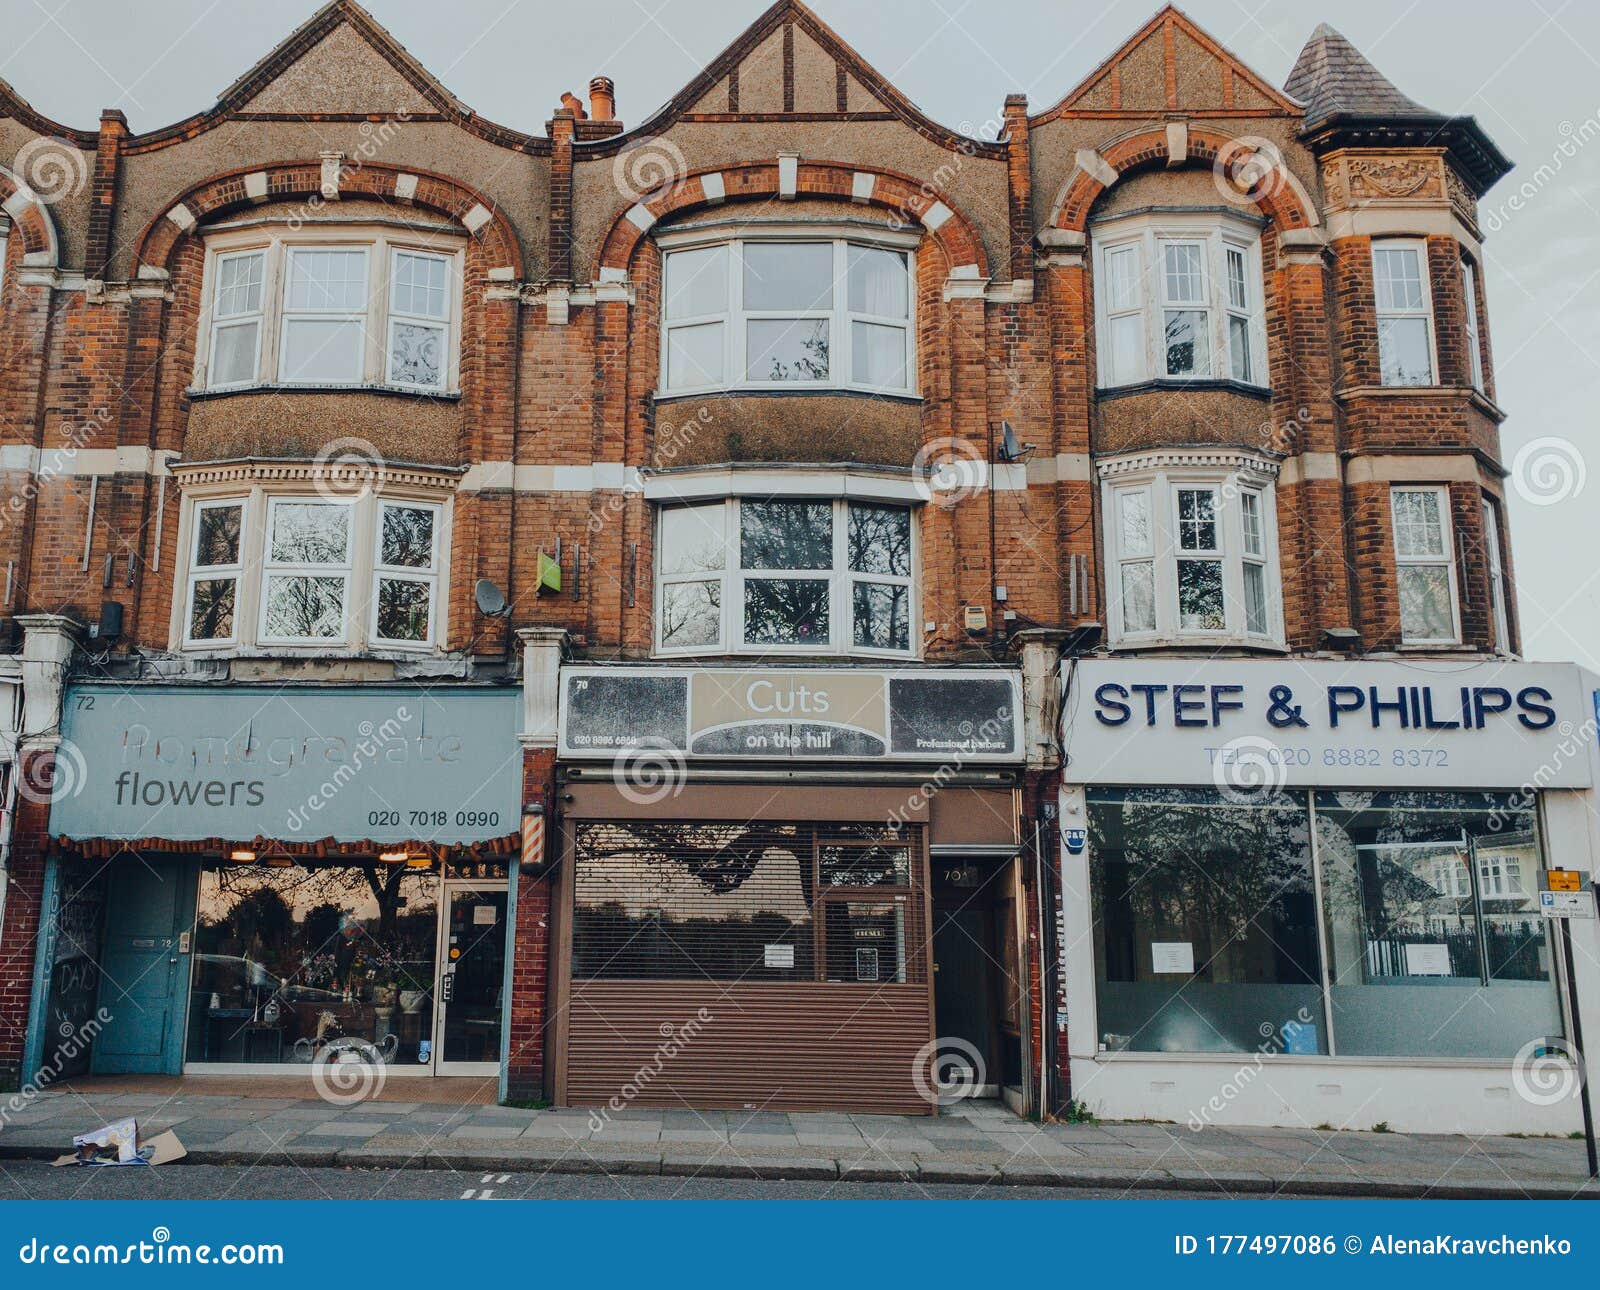 英国伦敦帕默斯格林街道上关闭的花店、理发店和房地产代理商. 英国伦敦 — 2020年3月28日：伦敦帕尔默斯格林的一条街上，关闭的花店、理发店和房地产代理商业务，因为冠状病毒威胁导致非必要业务关闭